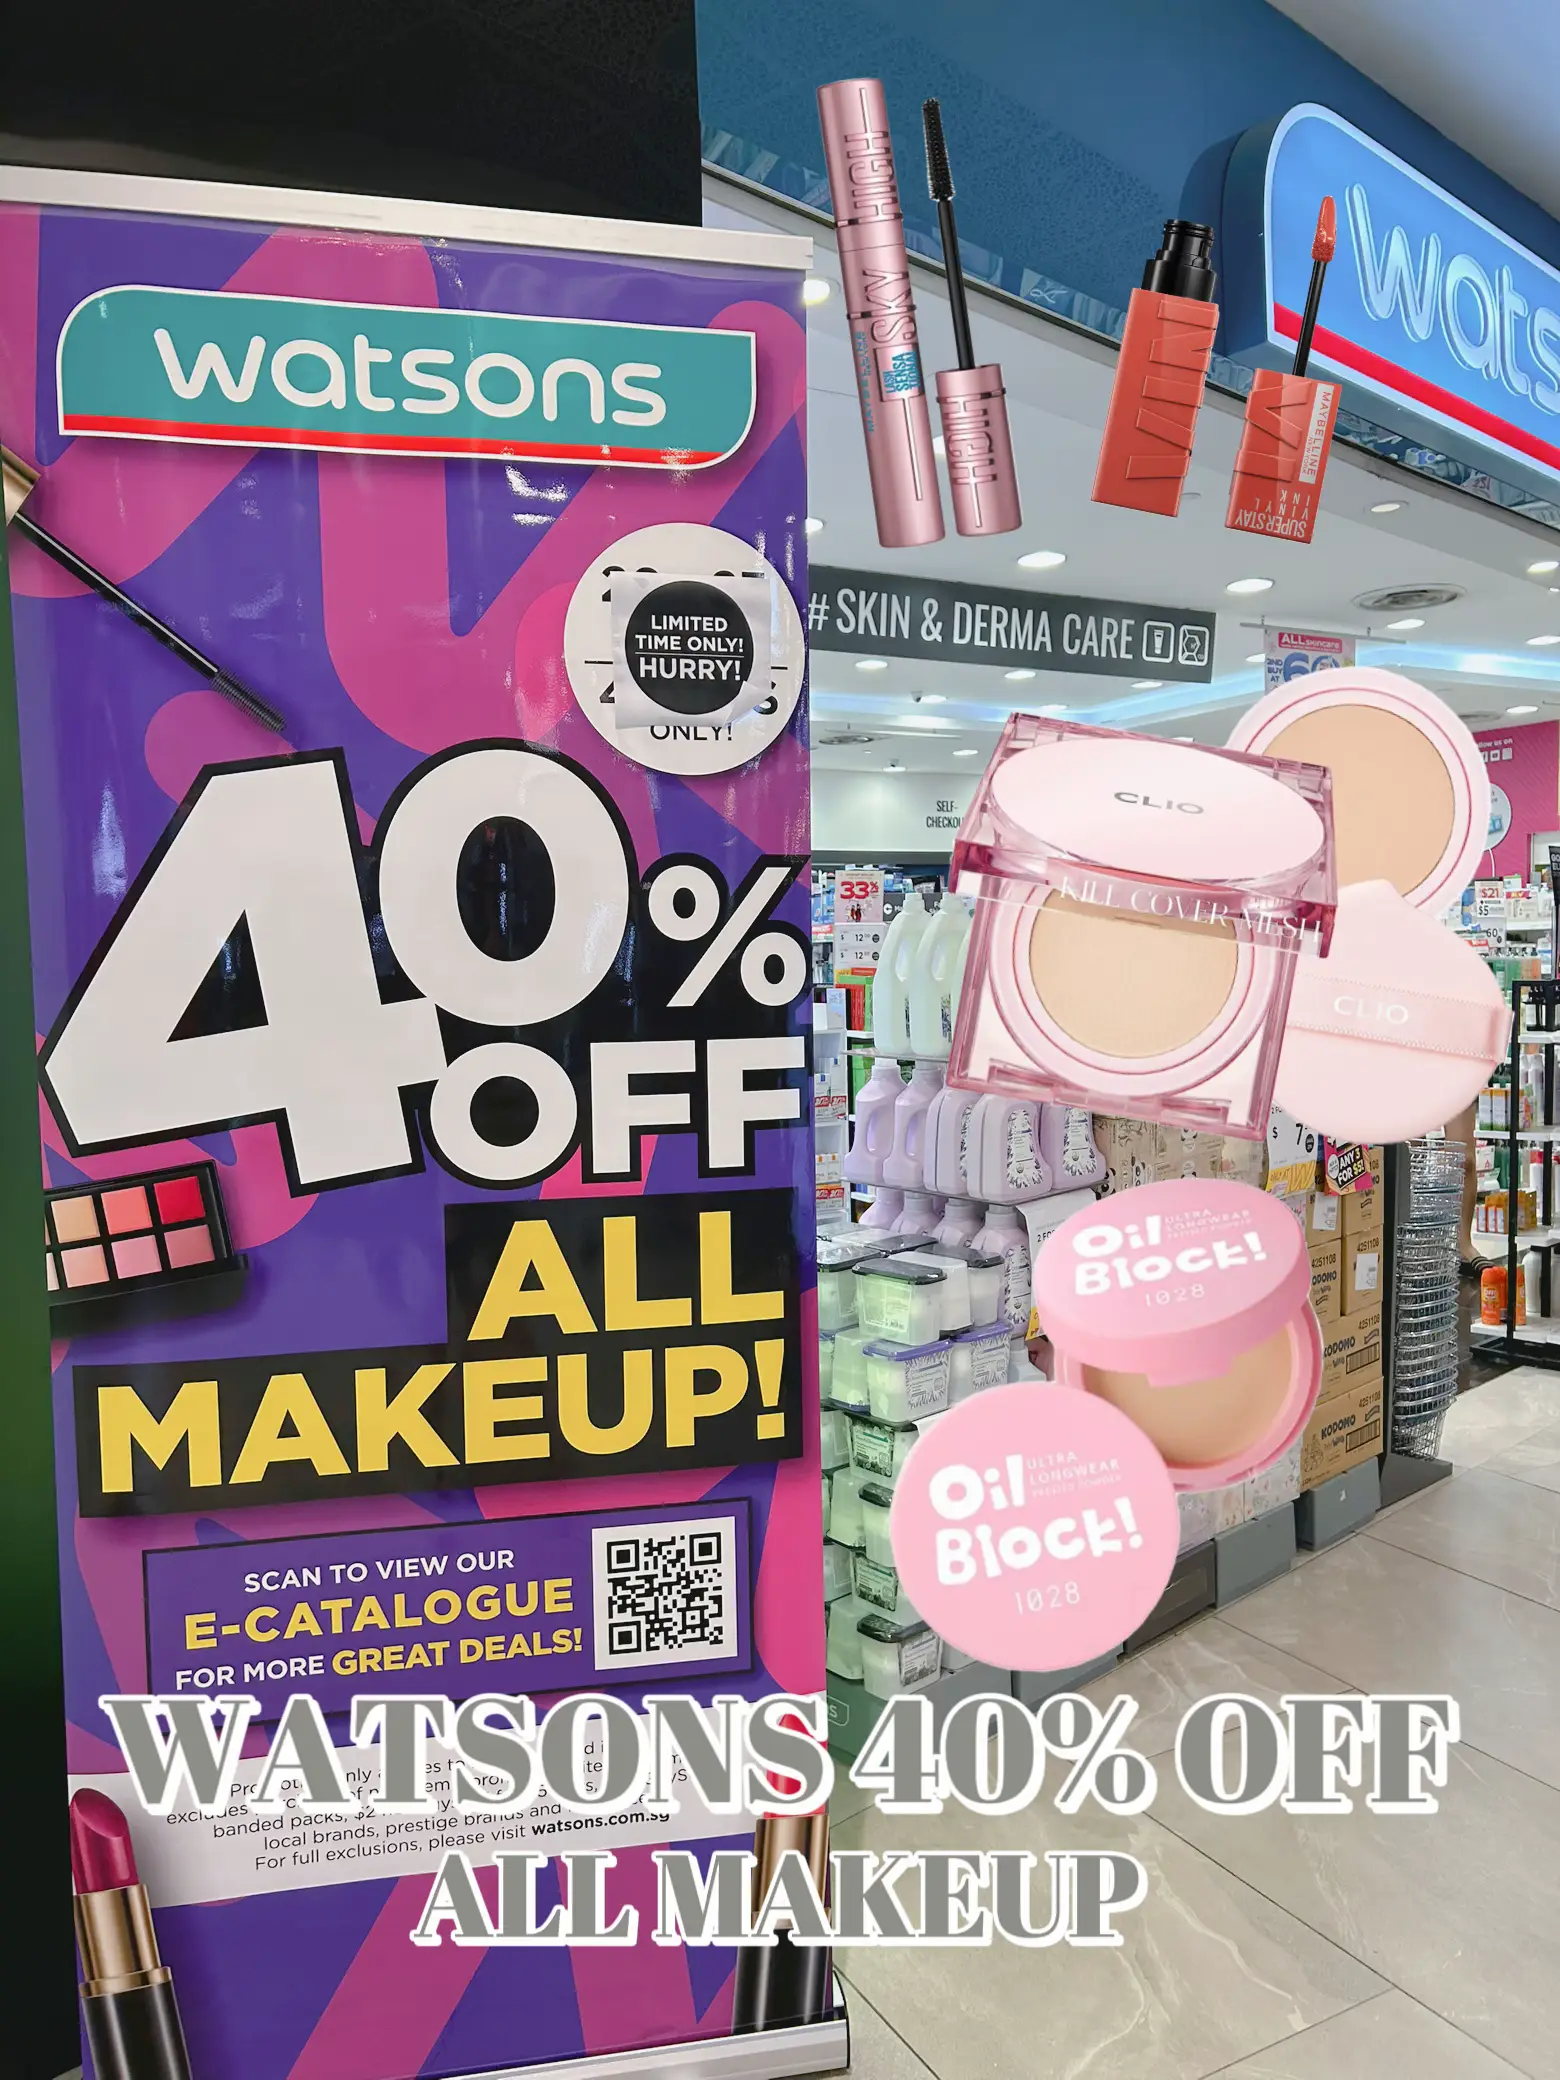 🚨PSA: Watsons 40% OFF ALL MAKEUP (+B1G1 DEALS)💄😱's images(0)